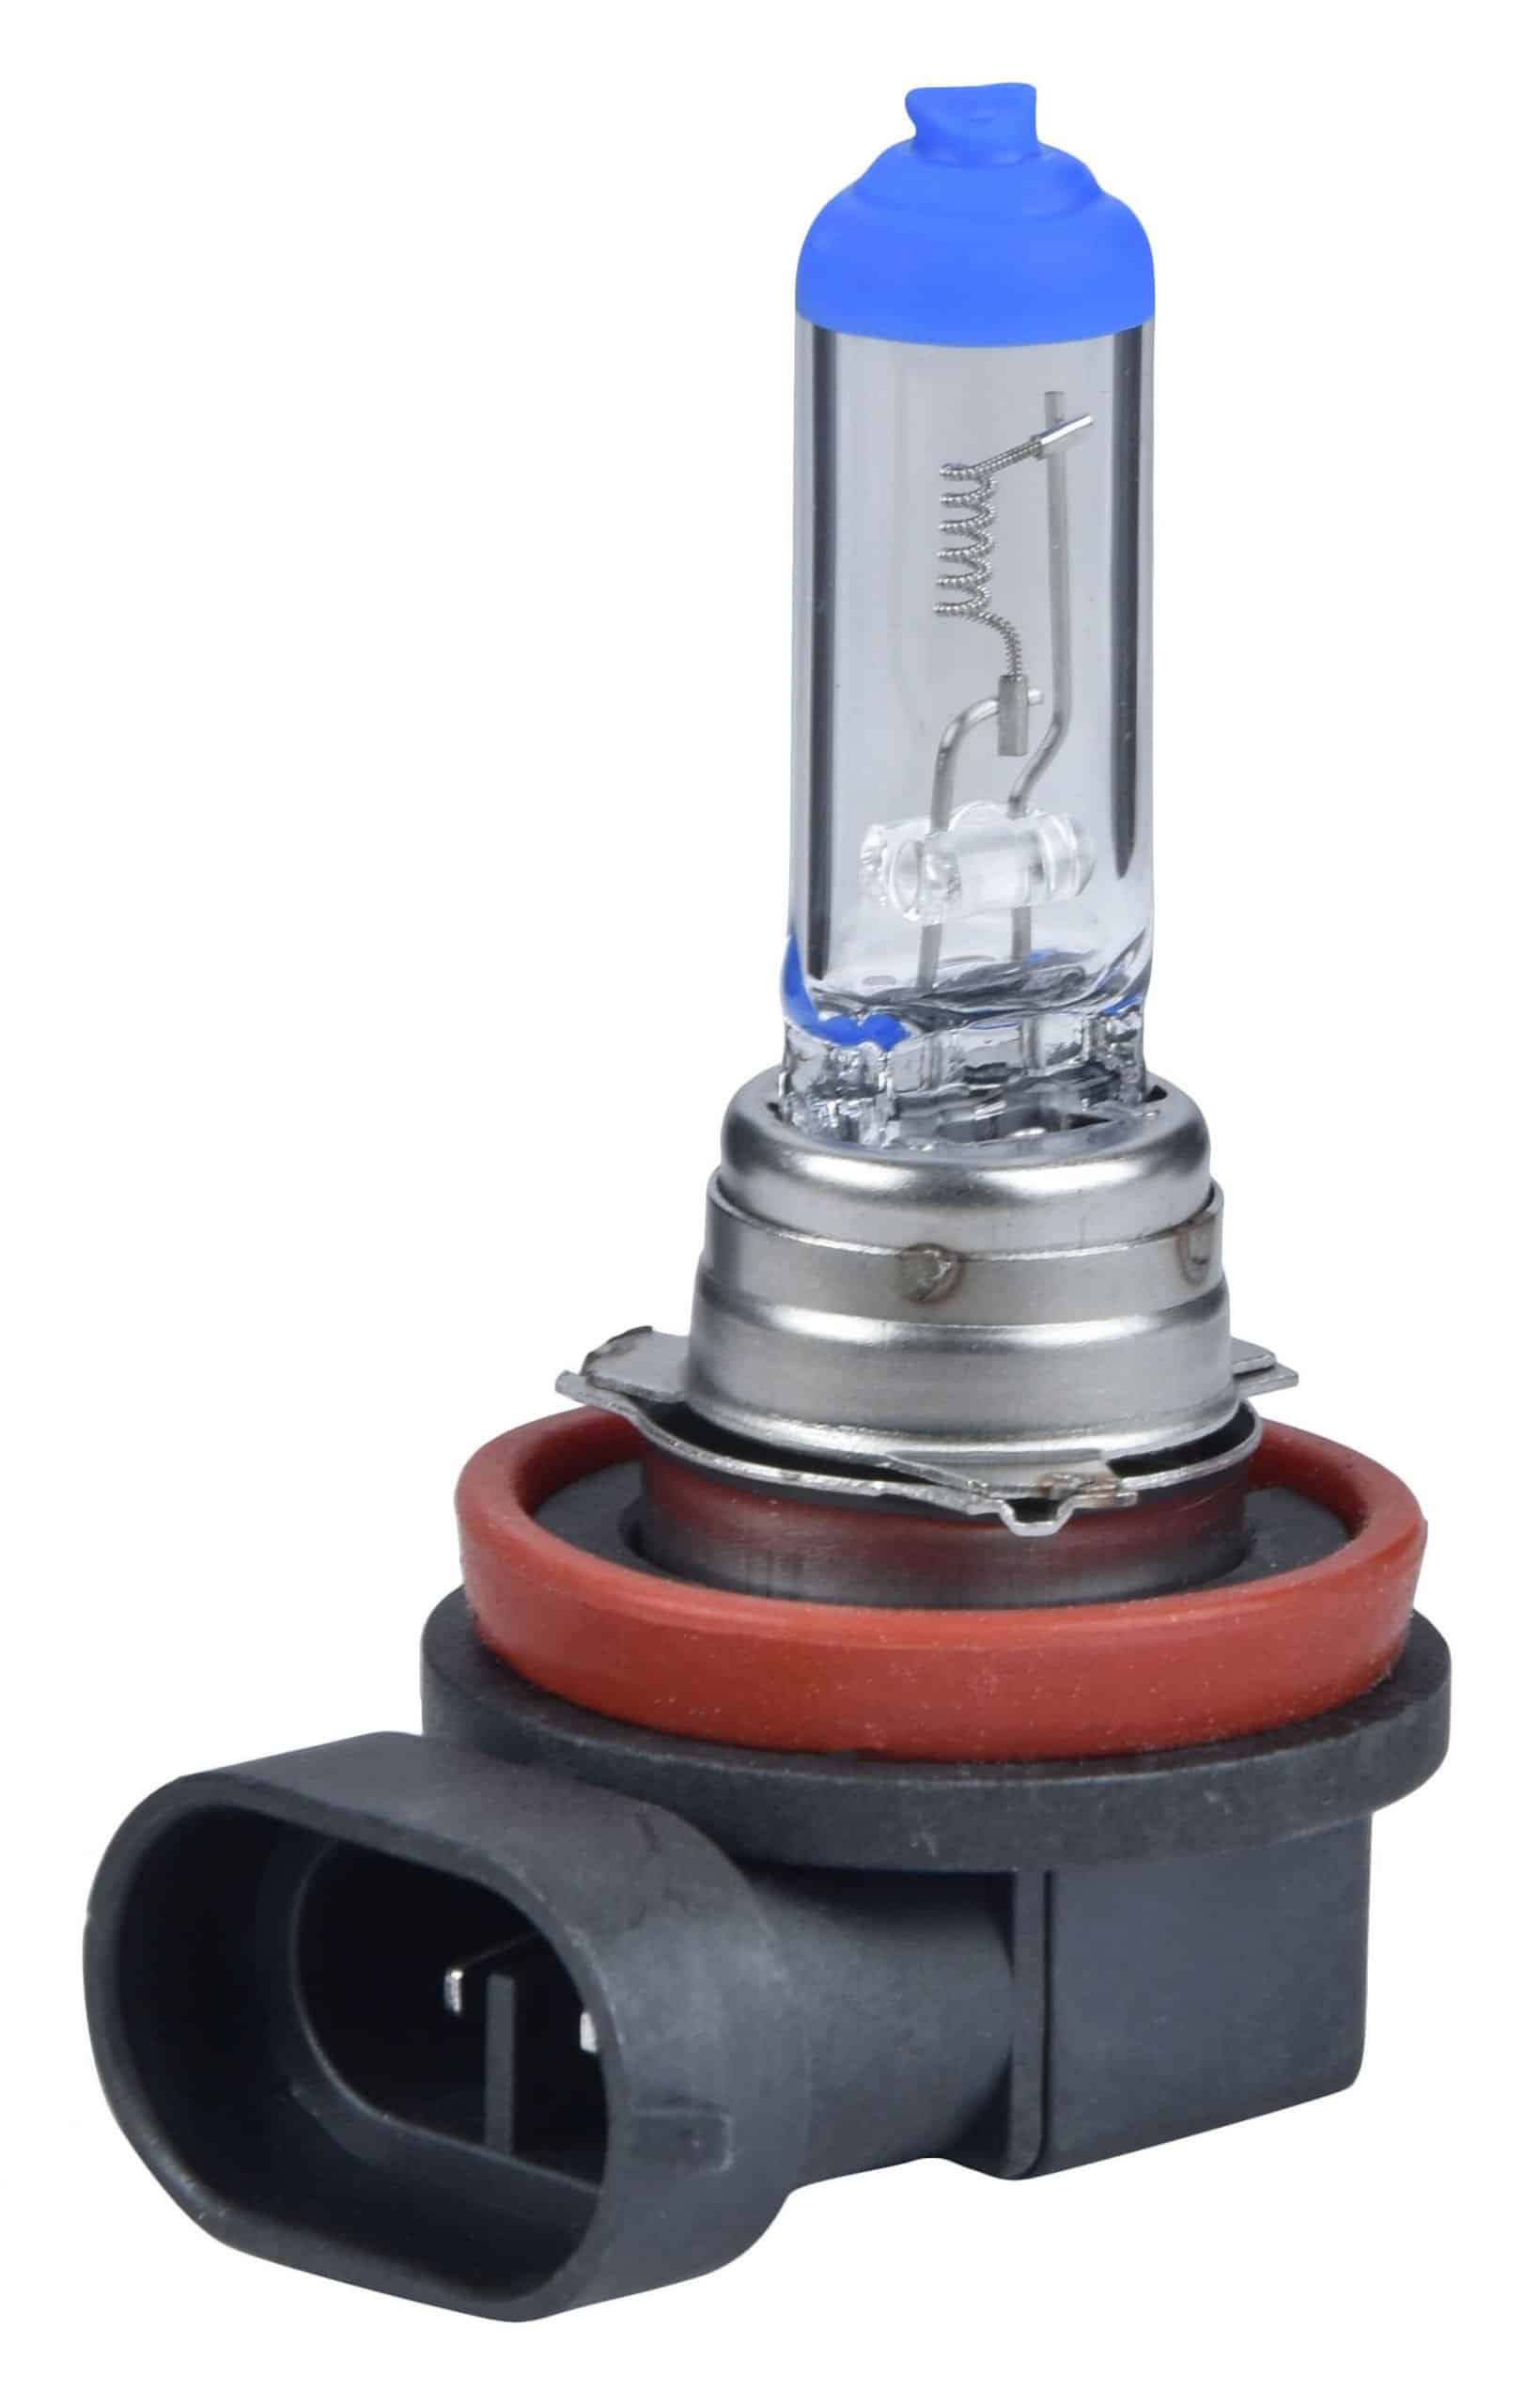 Potauto H8 Headlight Bulb PGJ19-1 24V 100W